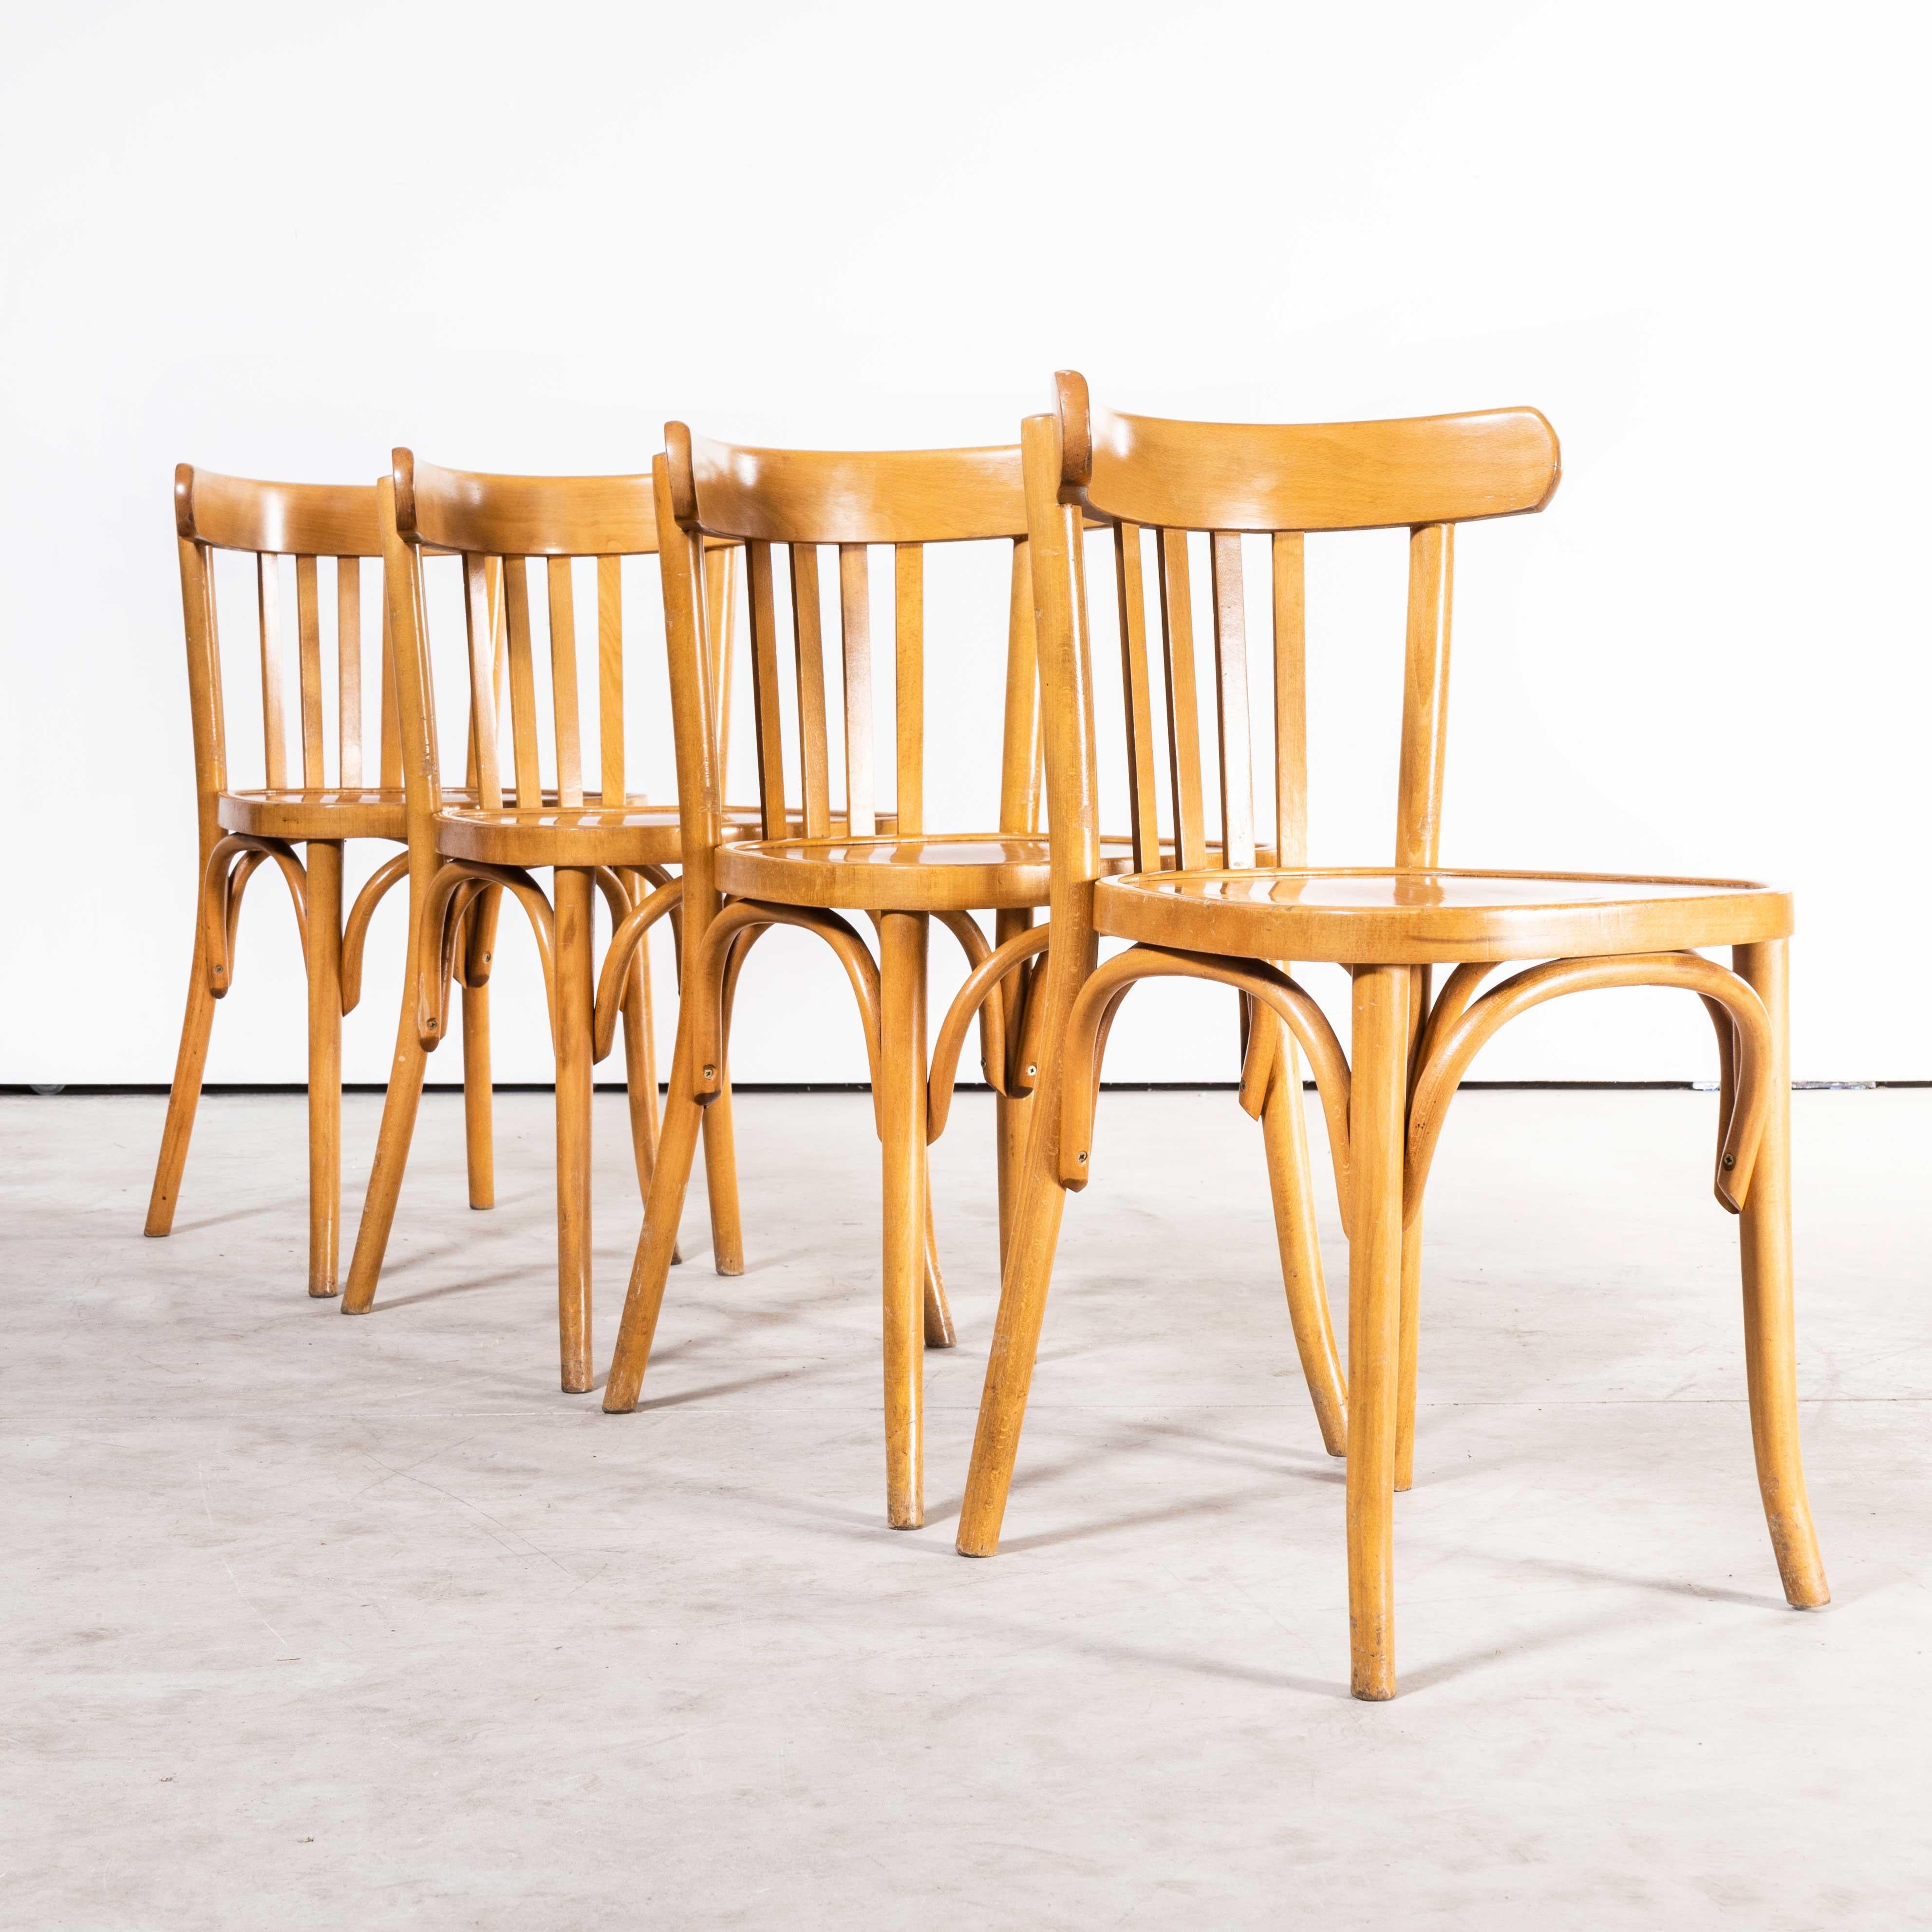 Chaises de salle à manger en bois de hêtre miel Bentwood des années 1970 - ensemble de quatre chaises
Chaises de salle à manger en hêtre miel Bentwood des années 1970 - ensemble de quatre. Achetées en France, ces chaises sont issues de la